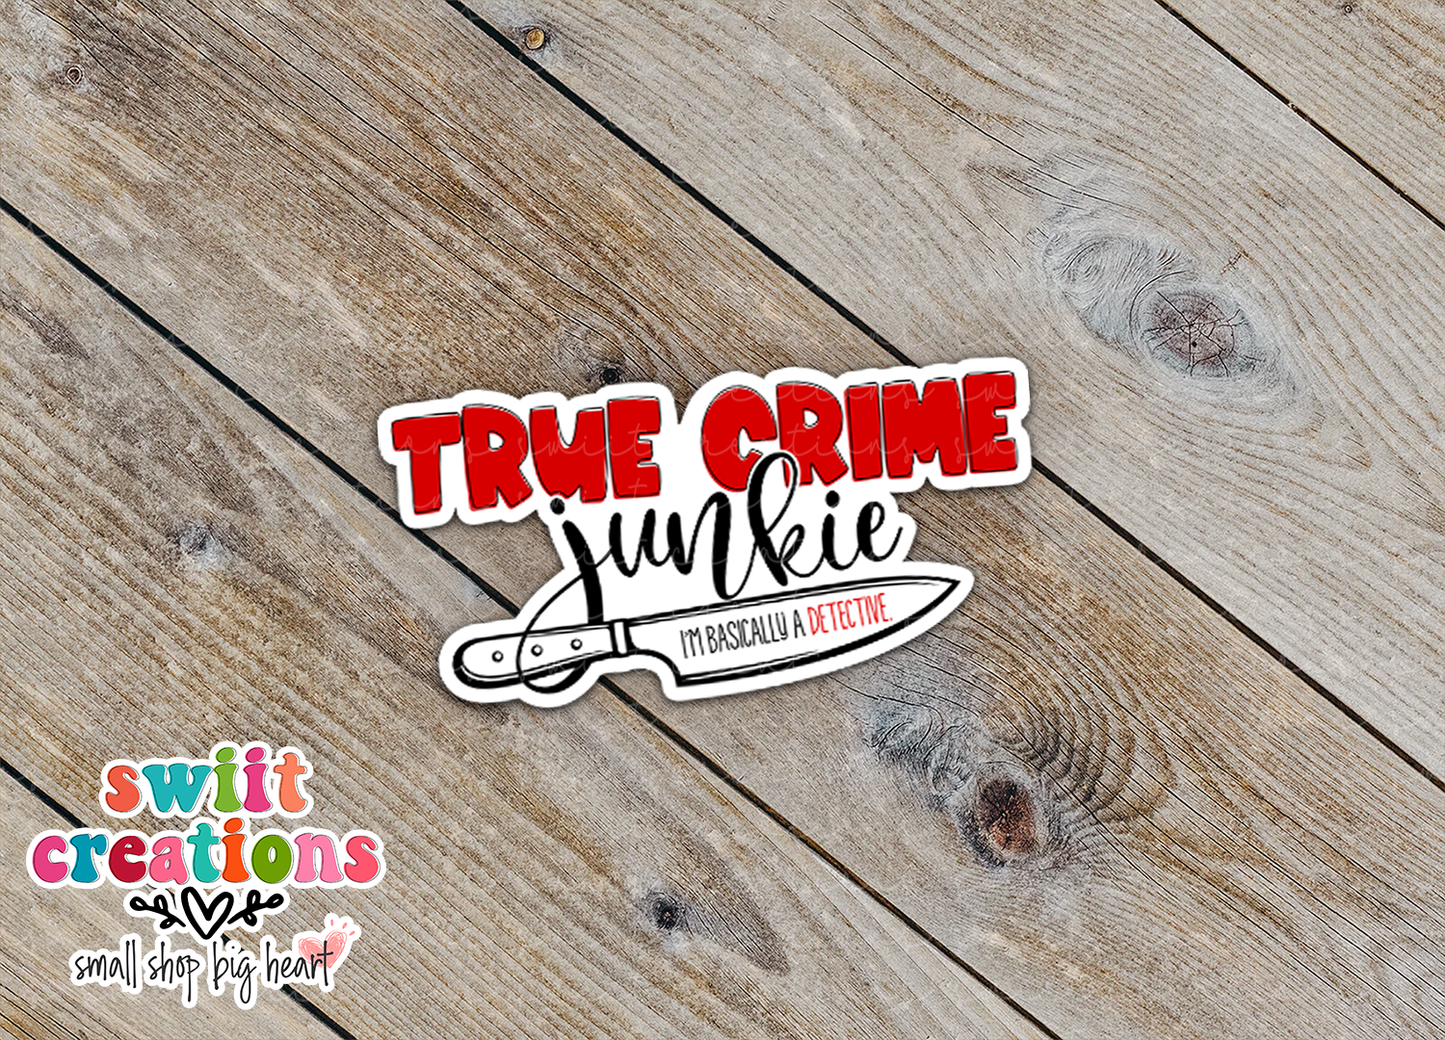 True Crime Junkie Waterproof Sticker (SS675)